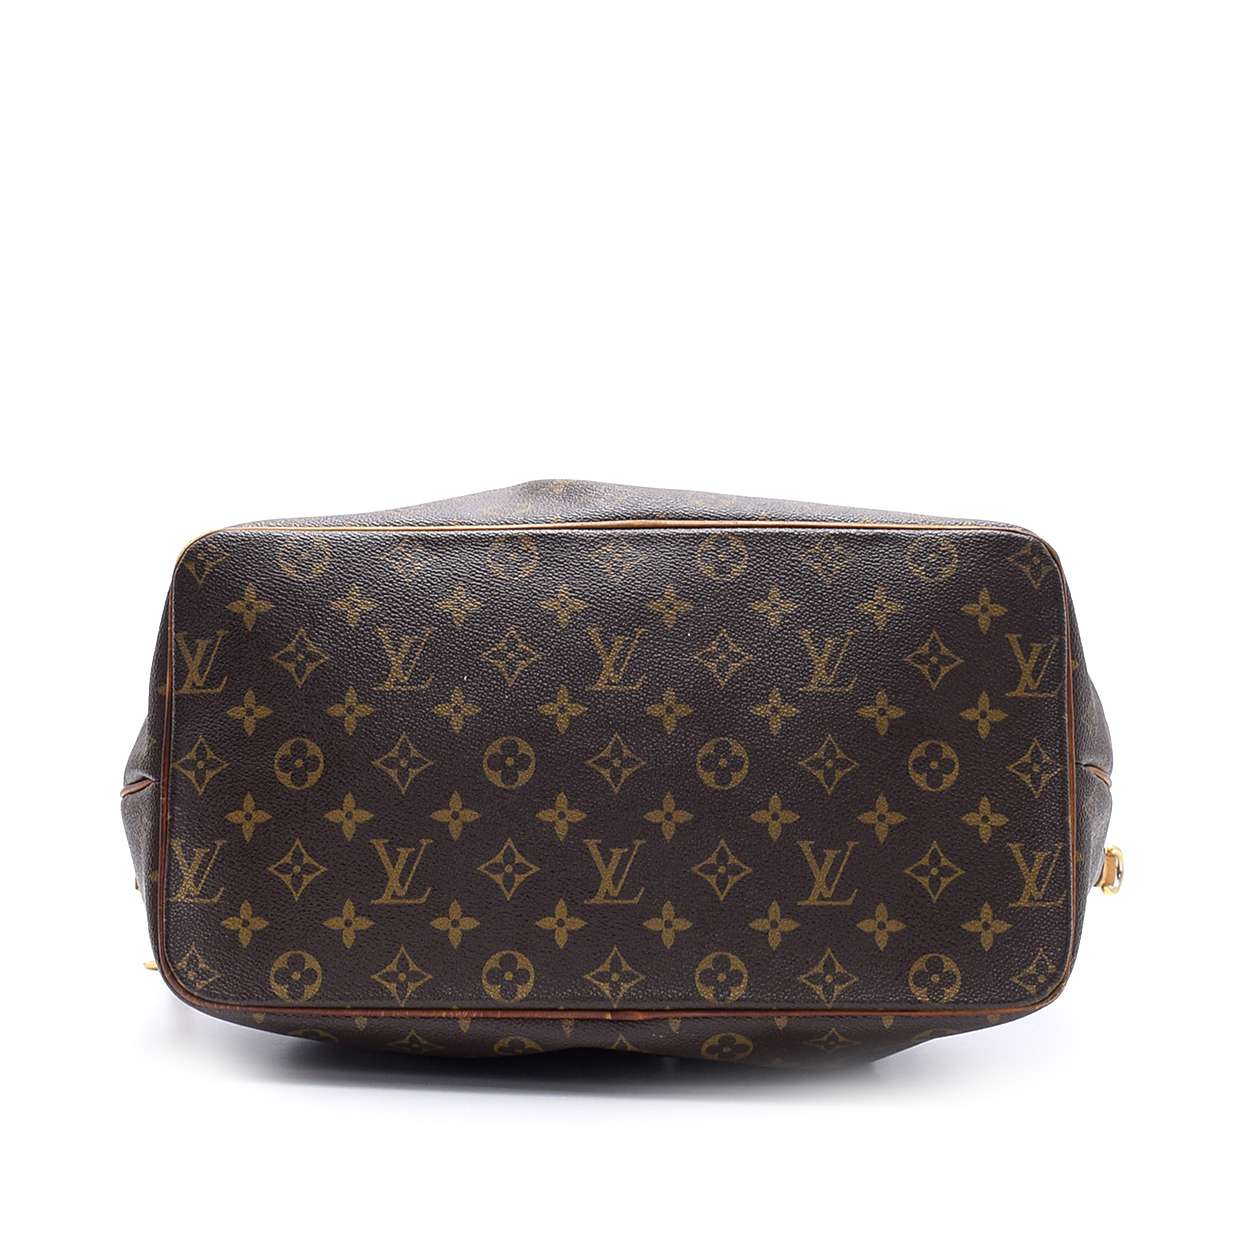 Louis Vuitton - Monogram Canvas Leather Palermo  Gm   Bag